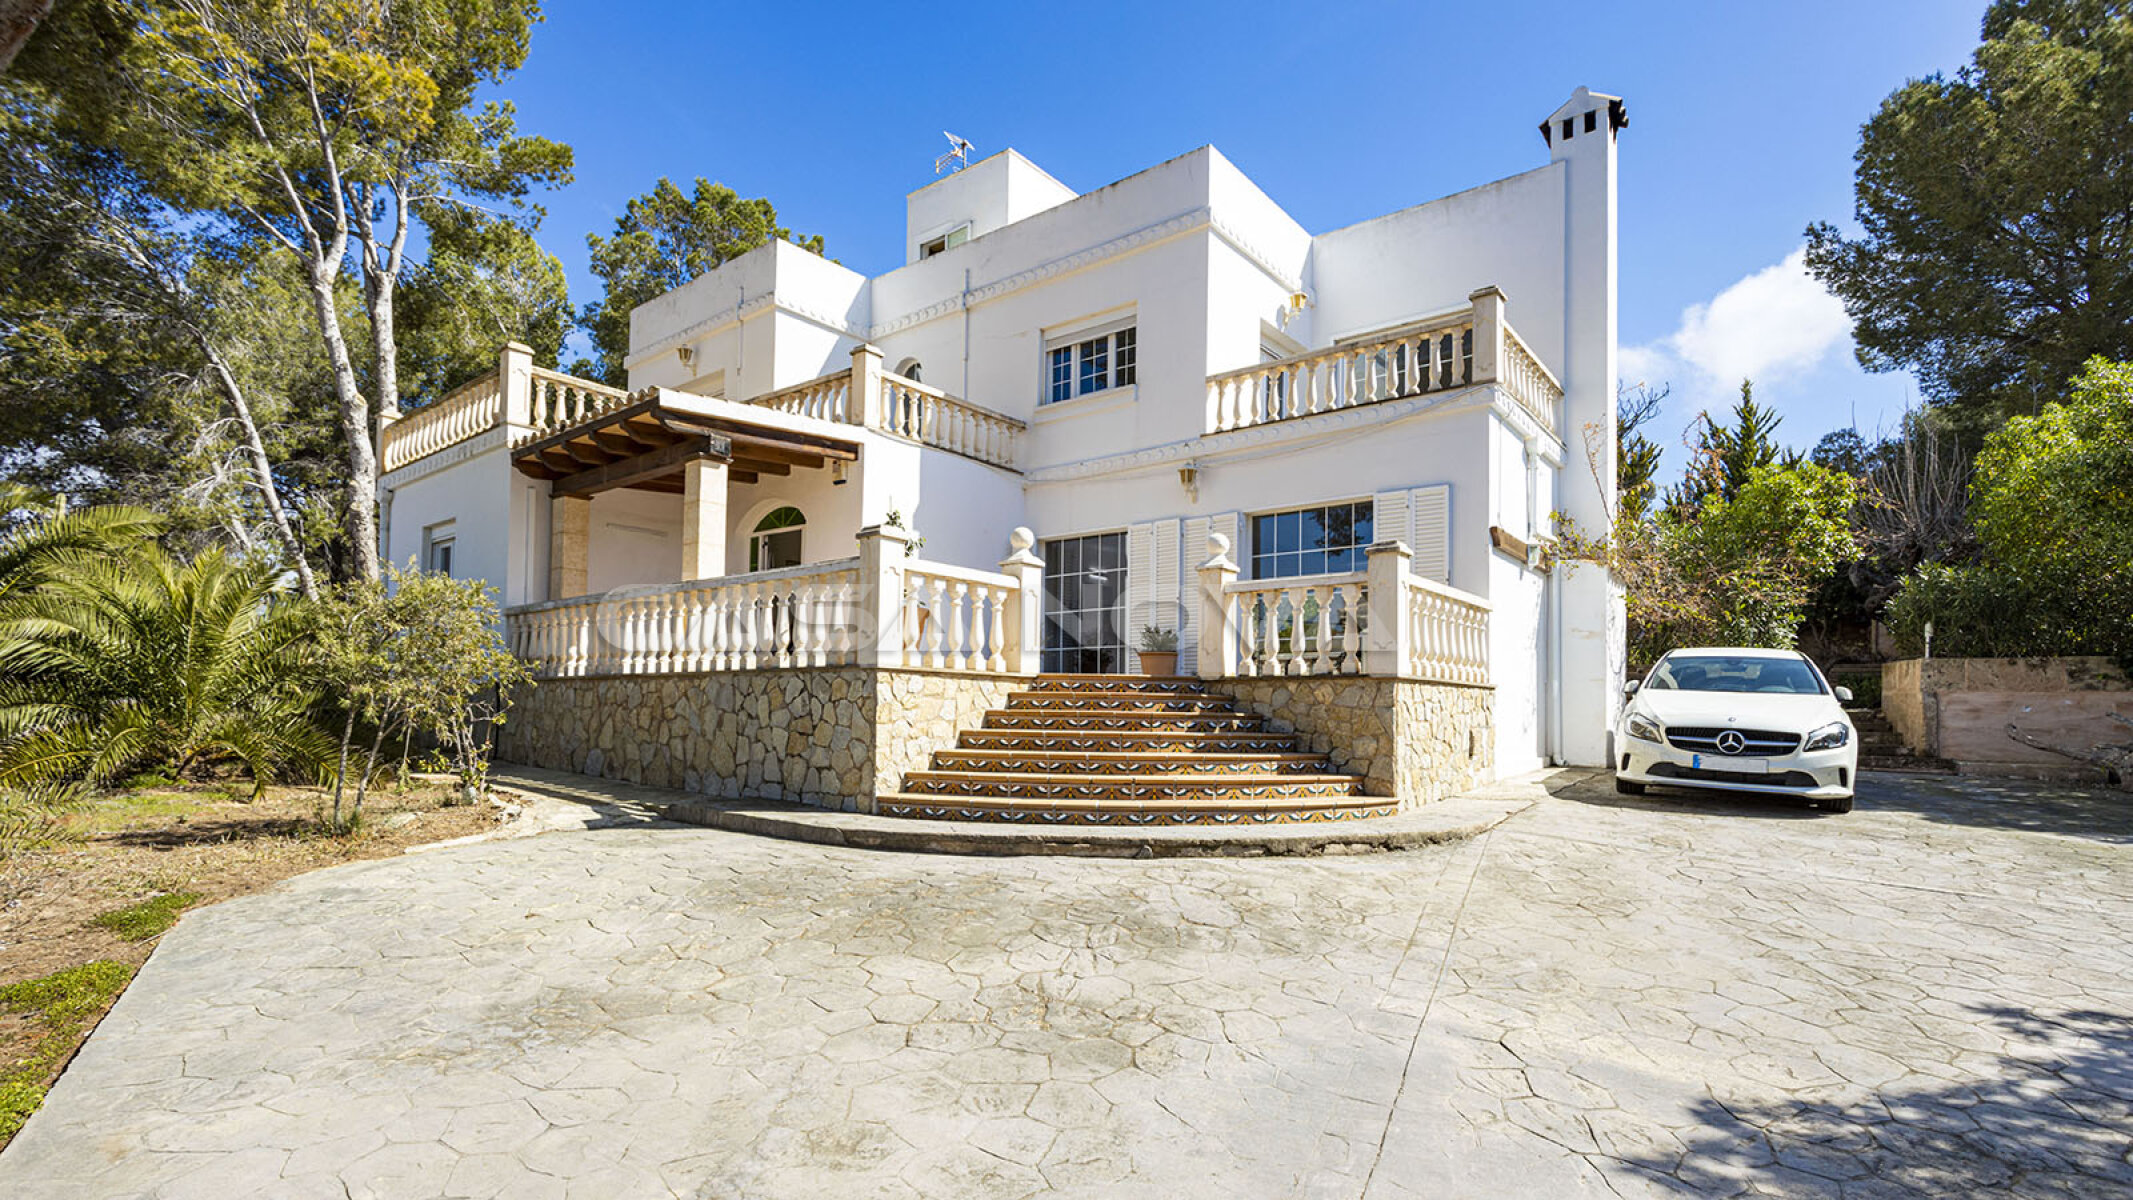 Imponente entrada de villas con acentos mediterr�neos